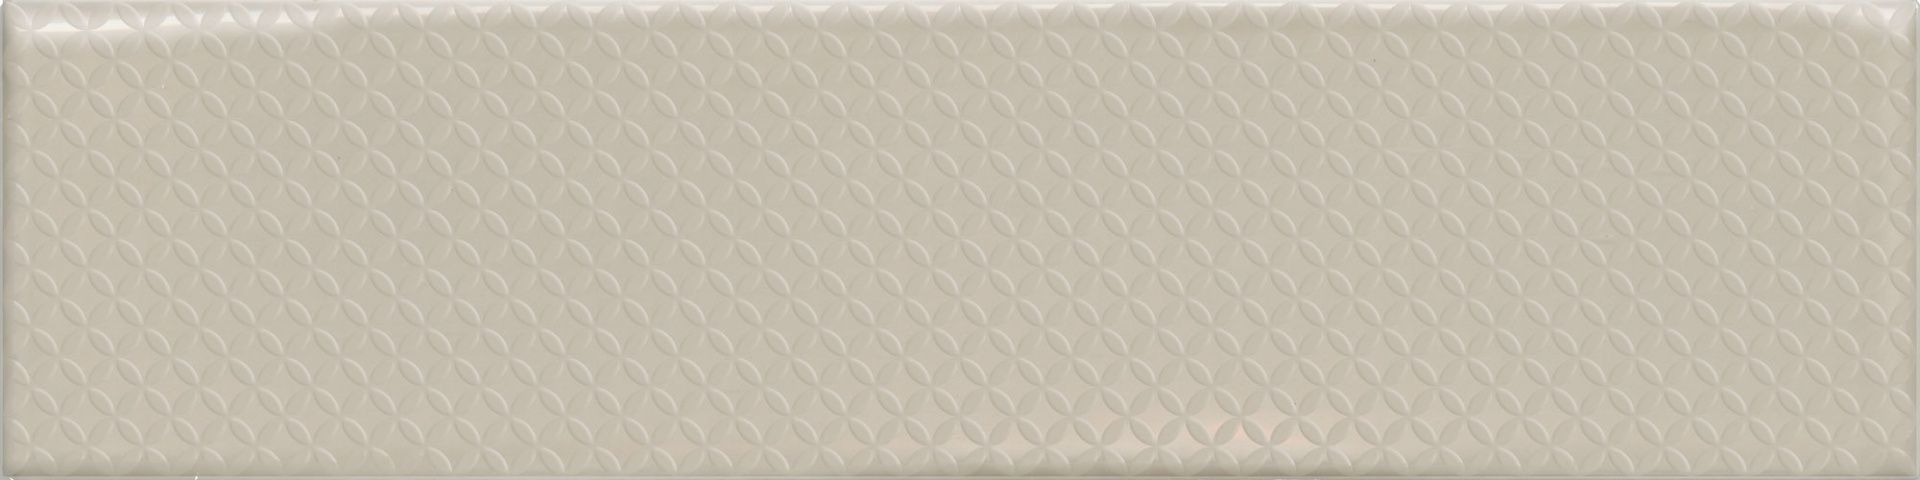 Керамическая плитка FLORENCIA DECOR BEIGE Декор 7,5x30